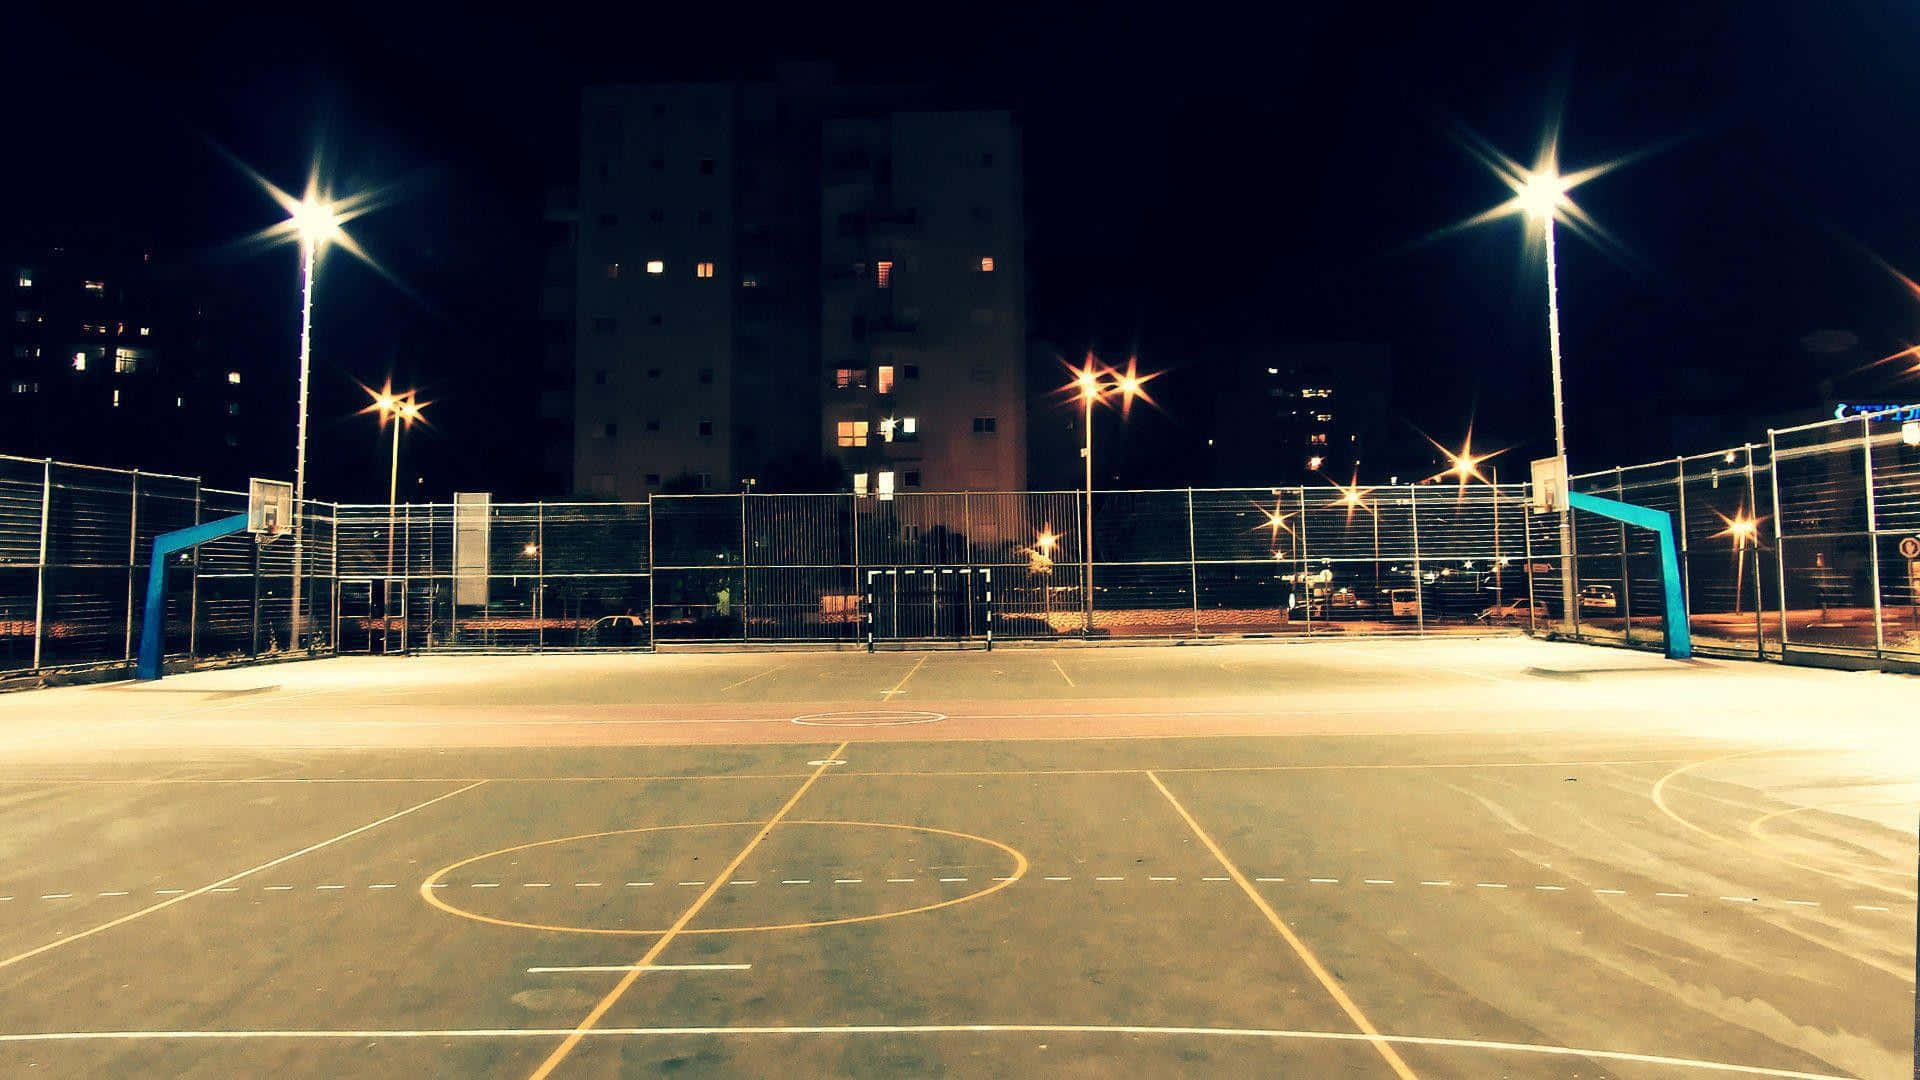 Unacancha De Baloncesto De Noche